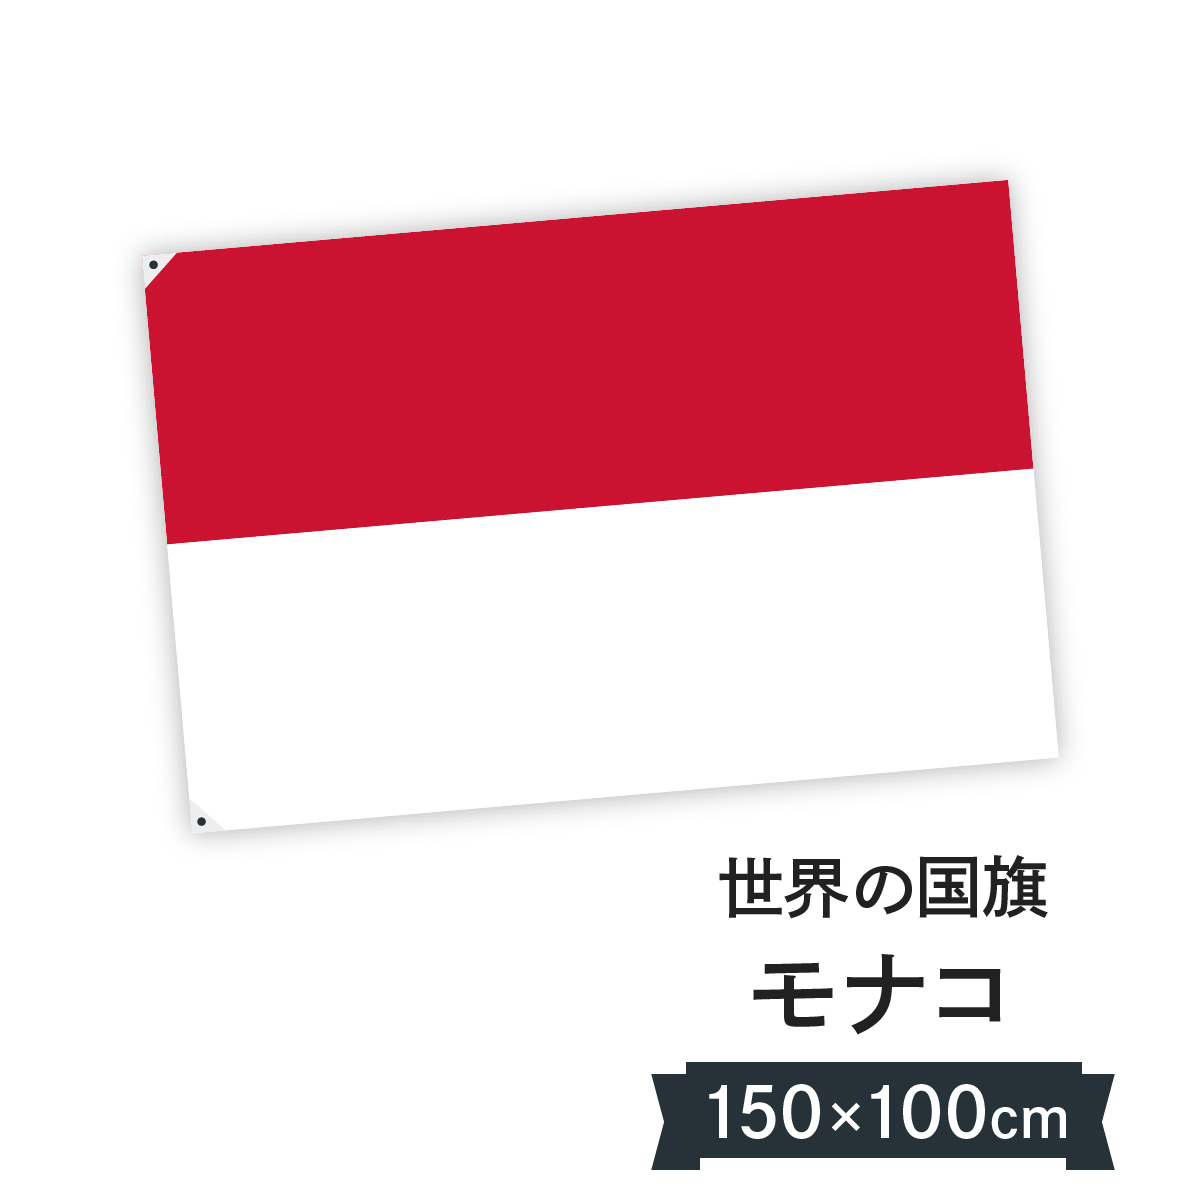 楽天市場 モナコ公国 国旗 W150cm H100cm グッズプロ